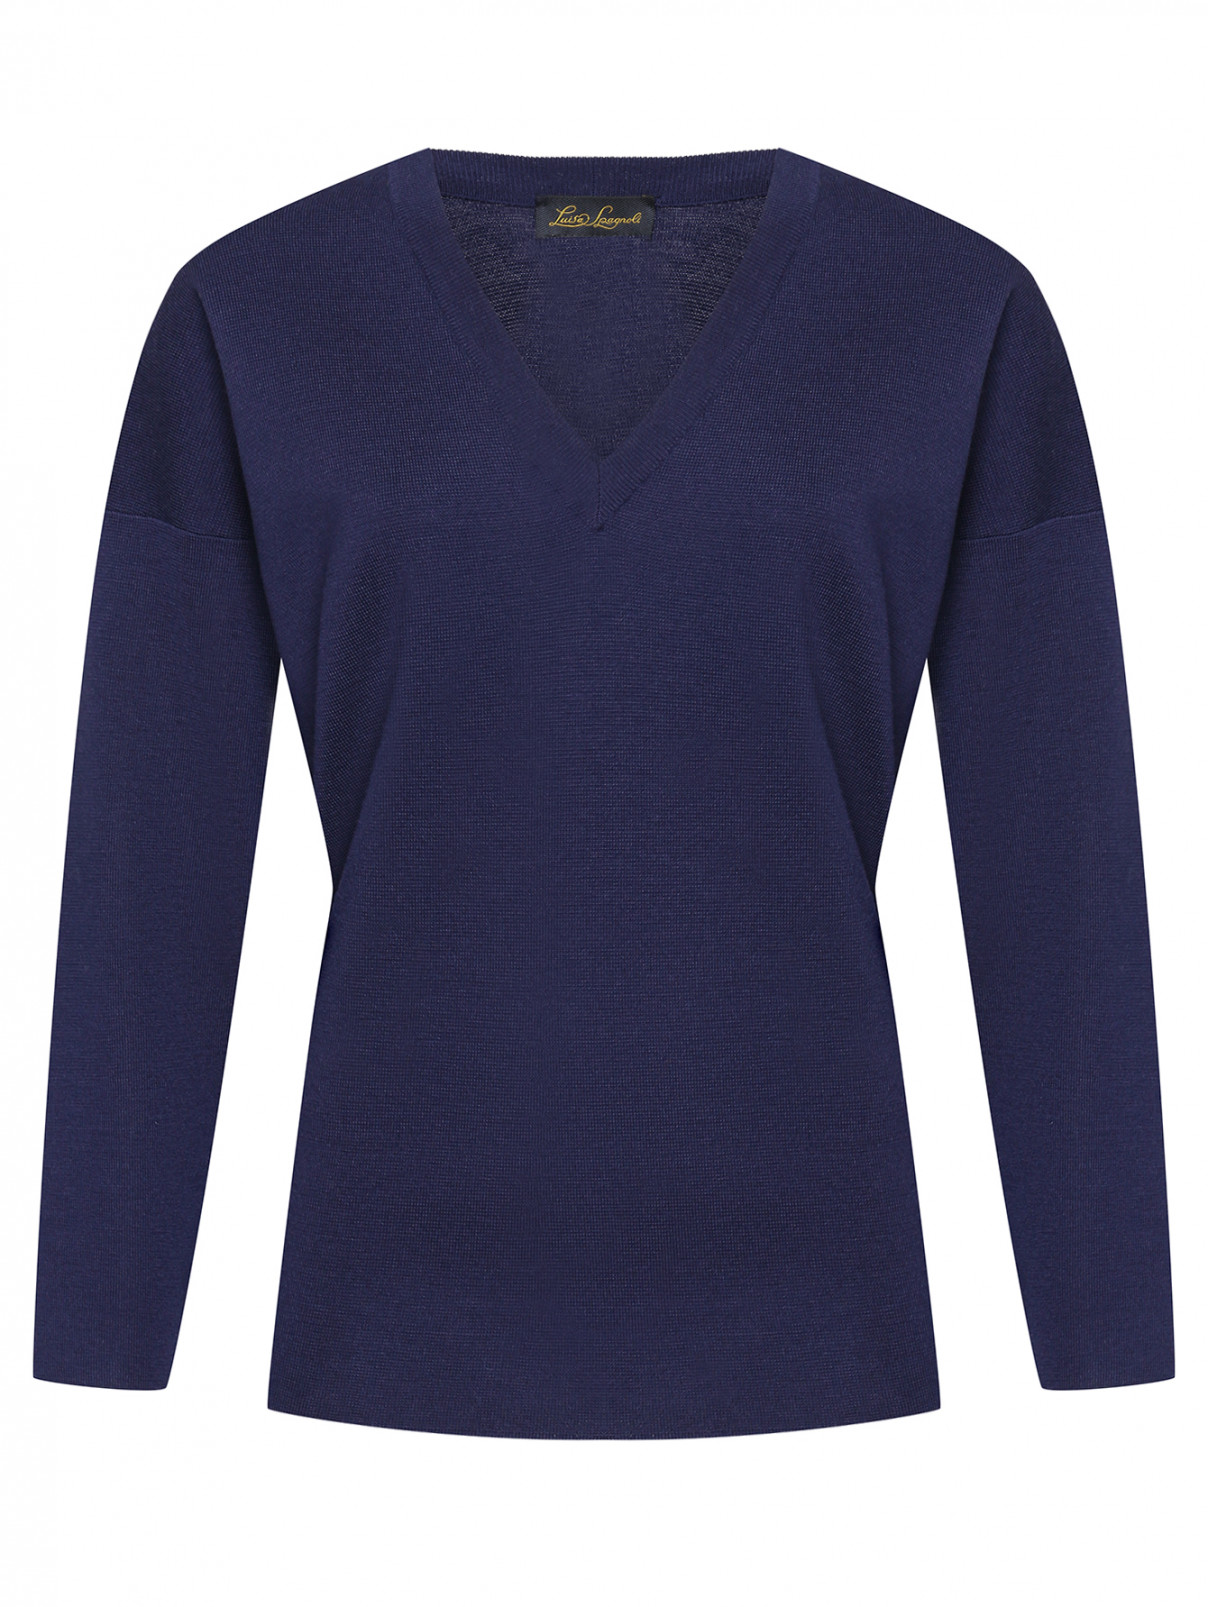 Пуловер из чистой шерсти Luisa Spagnoli  –  Общий вид  – Цвет:  Синий